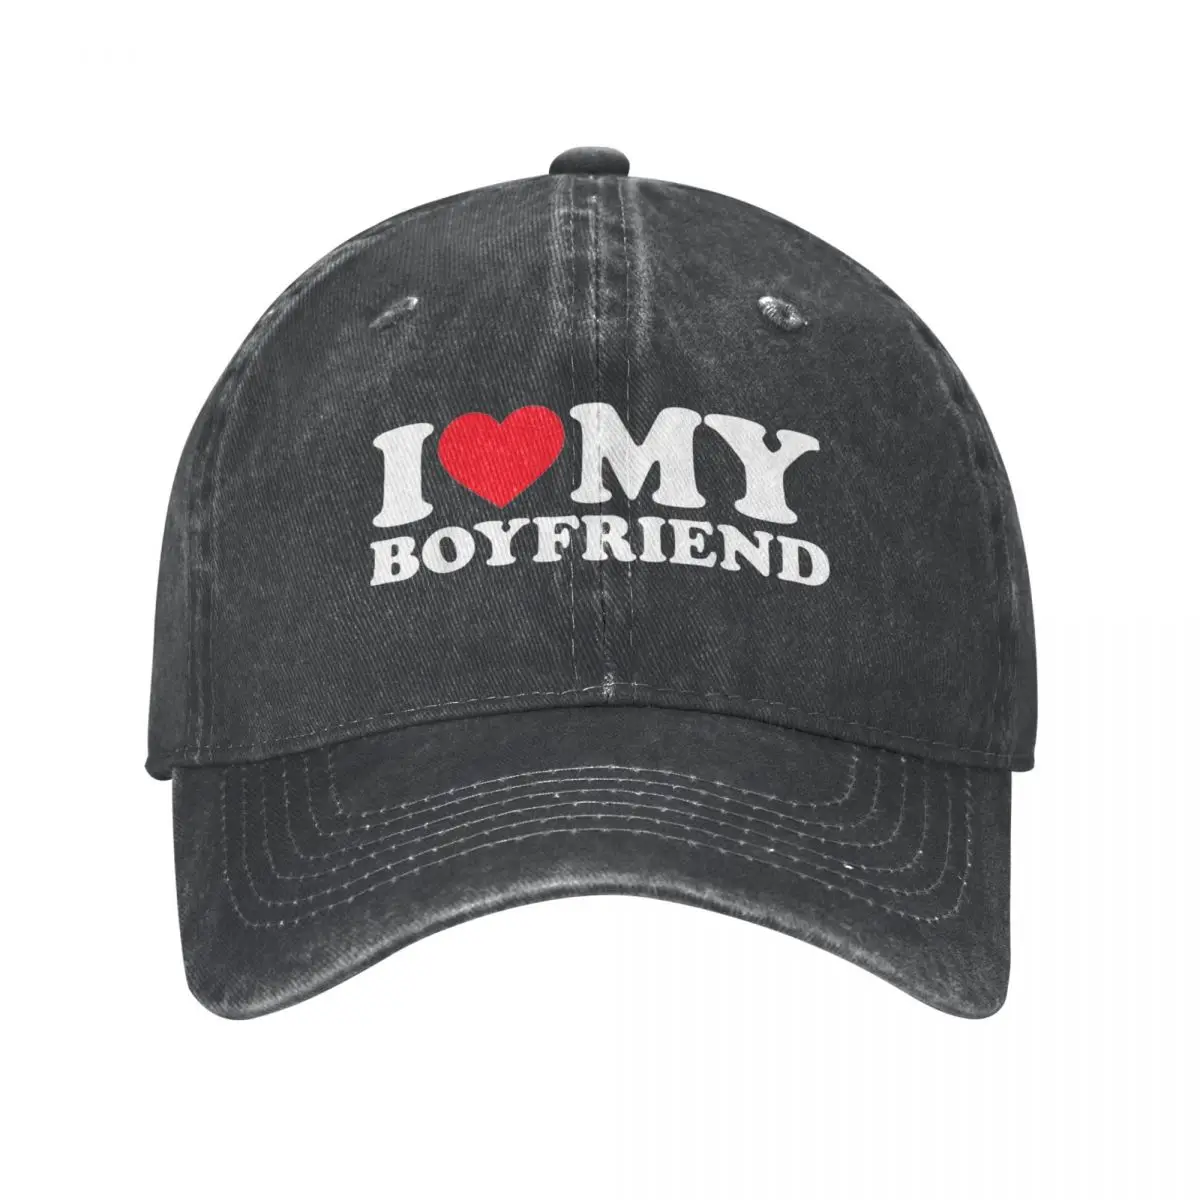 

I Love My Boyfriend Baseball Cap Classic Distressed Denim Snapback Hat Men Women Outdoor Activities Caps Hat